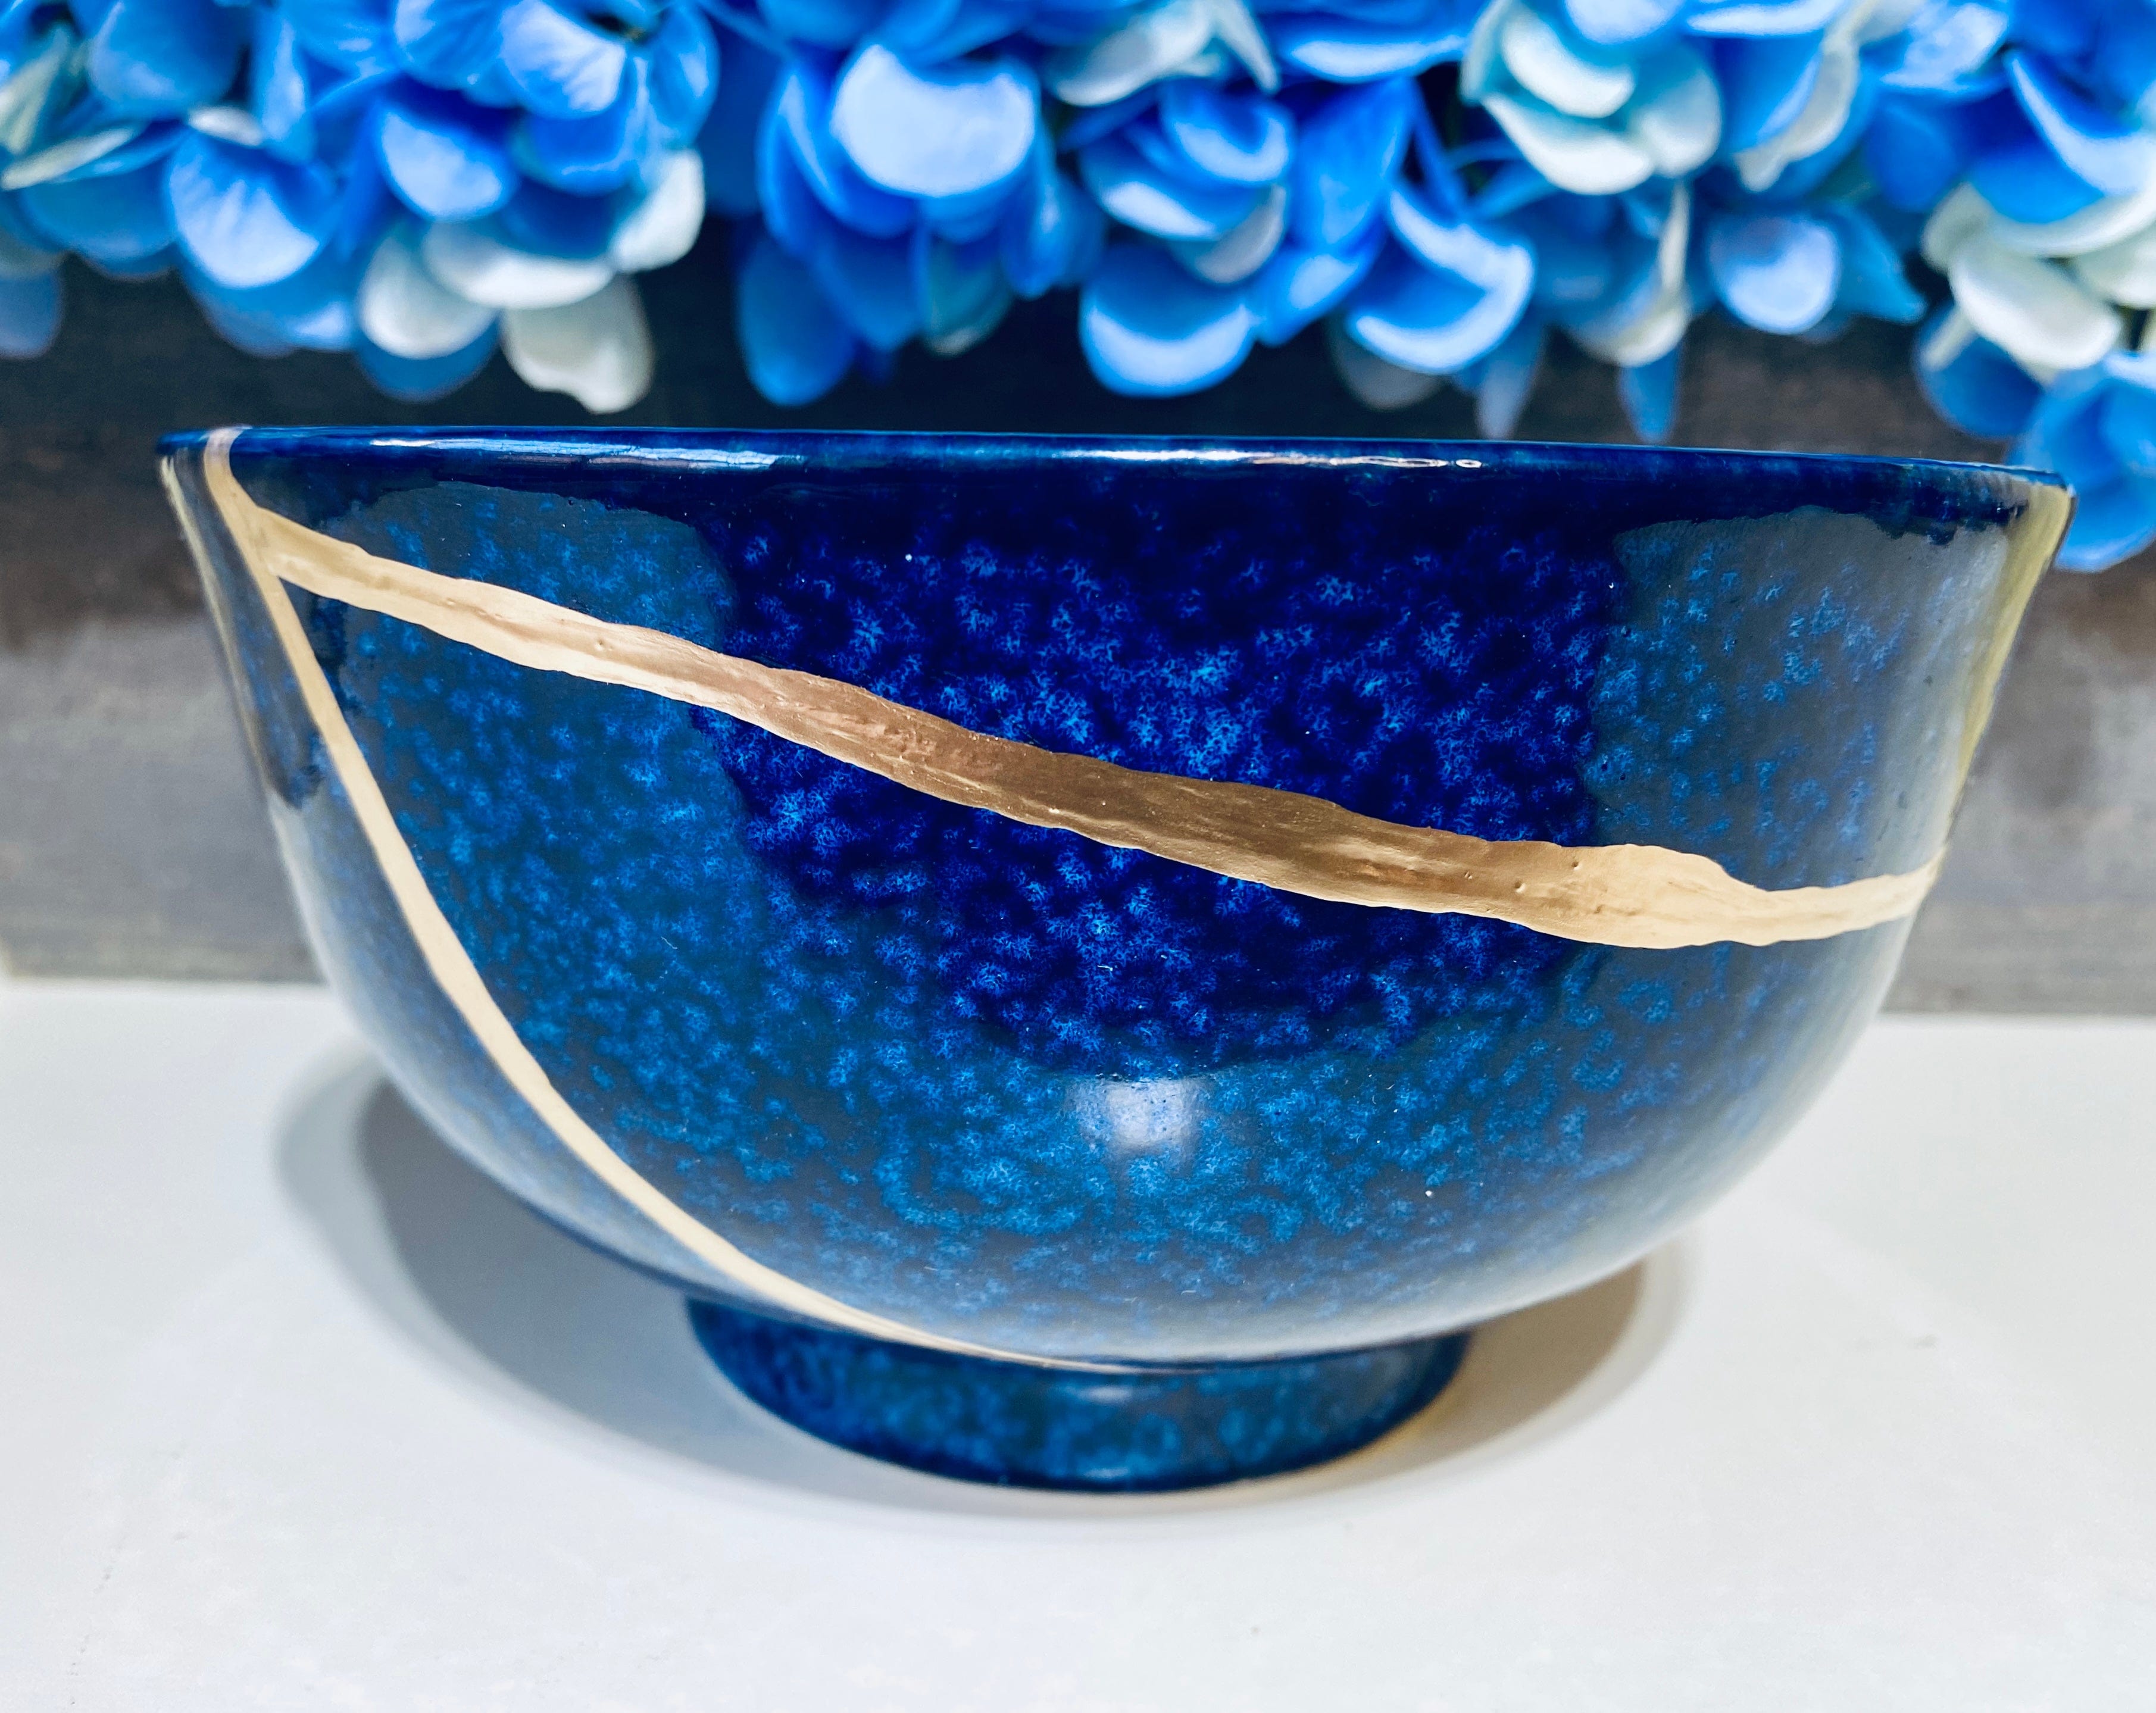 Kintsugi Ocean Blue Ramen Bowl Large